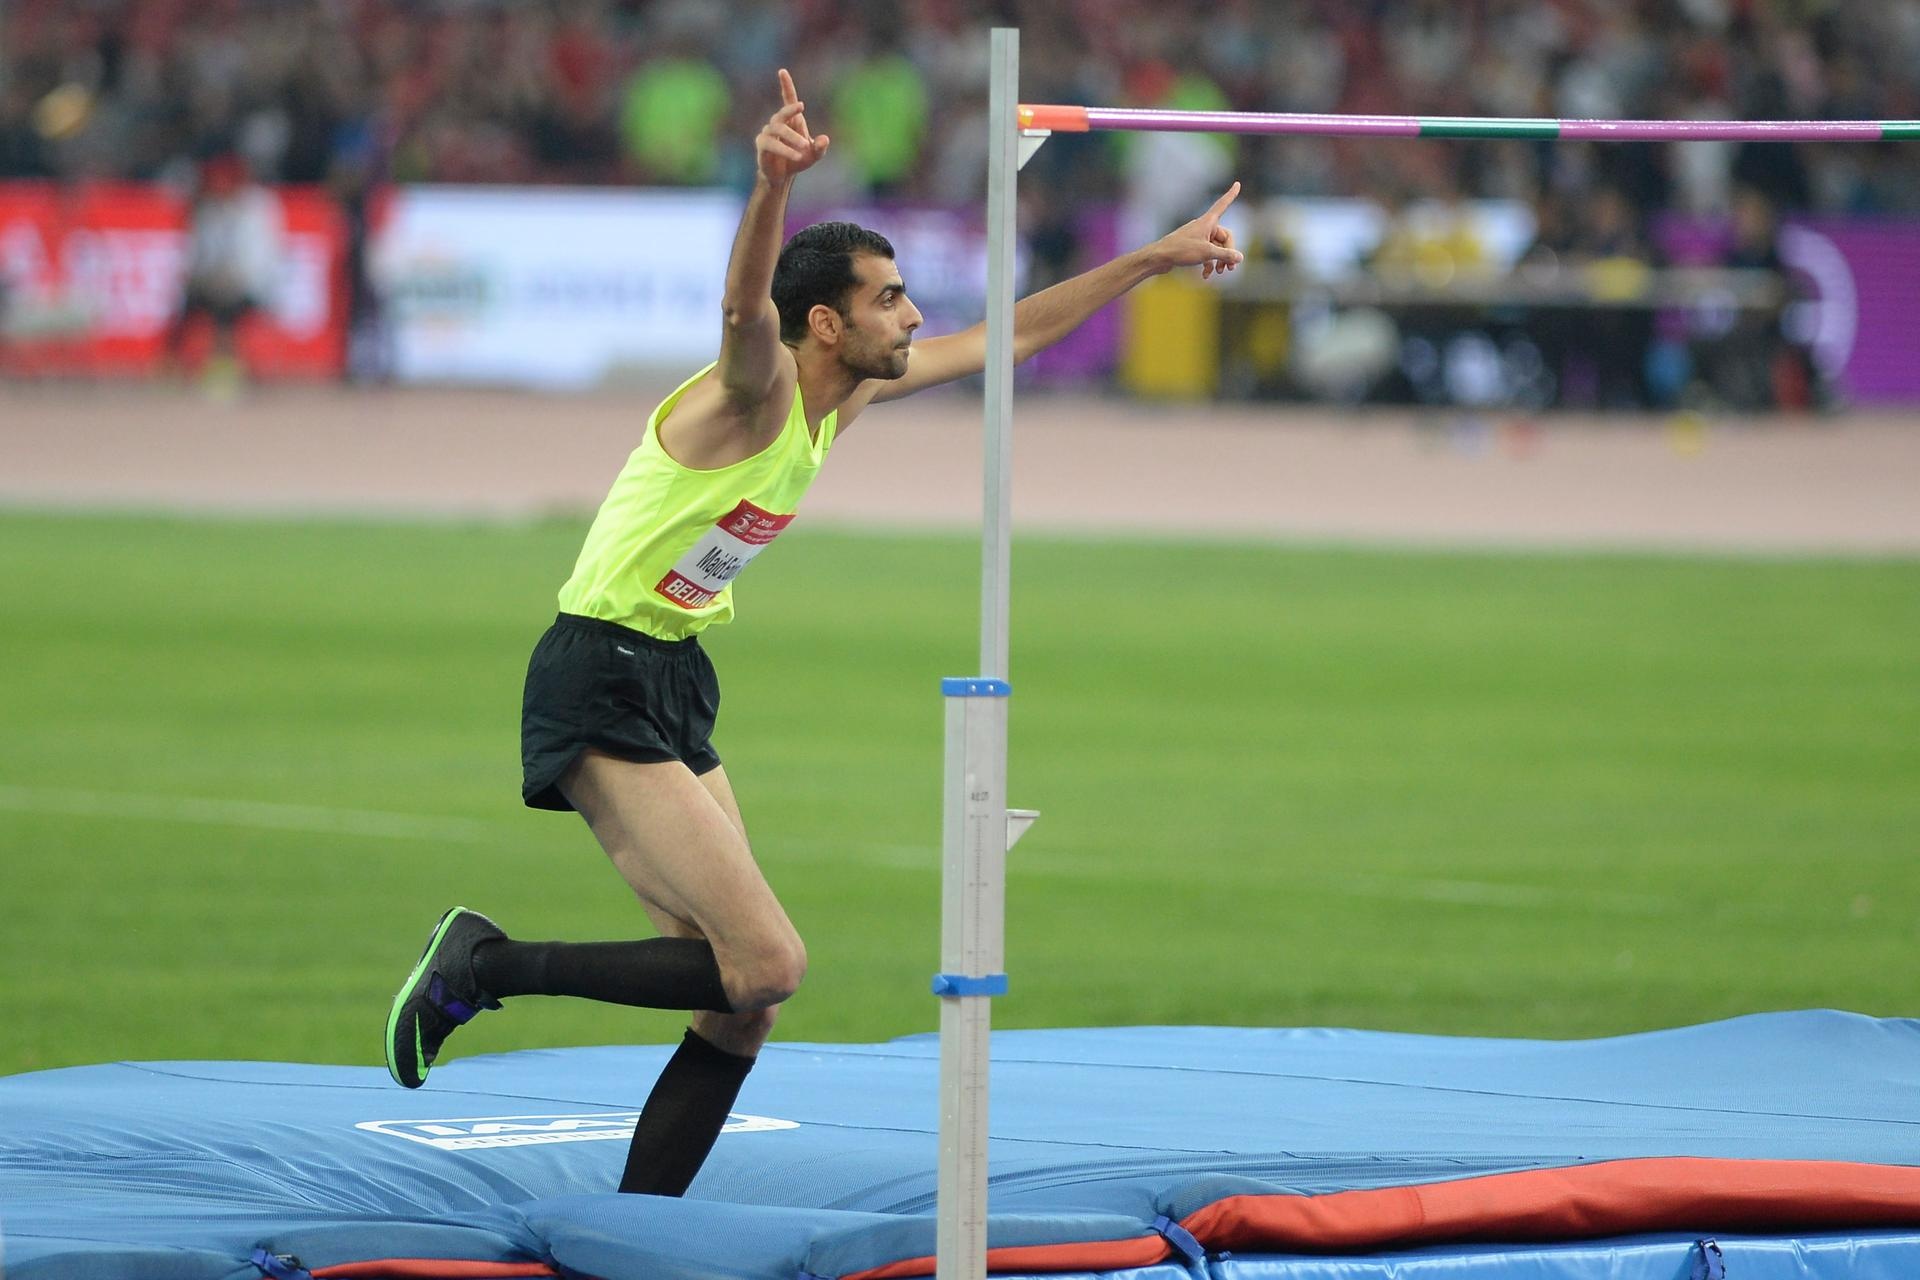 Majd Eddin Ghazal, Arab male athlete, Athlete to watch in 2021, Promising talent, 1920x1280 HD Desktop